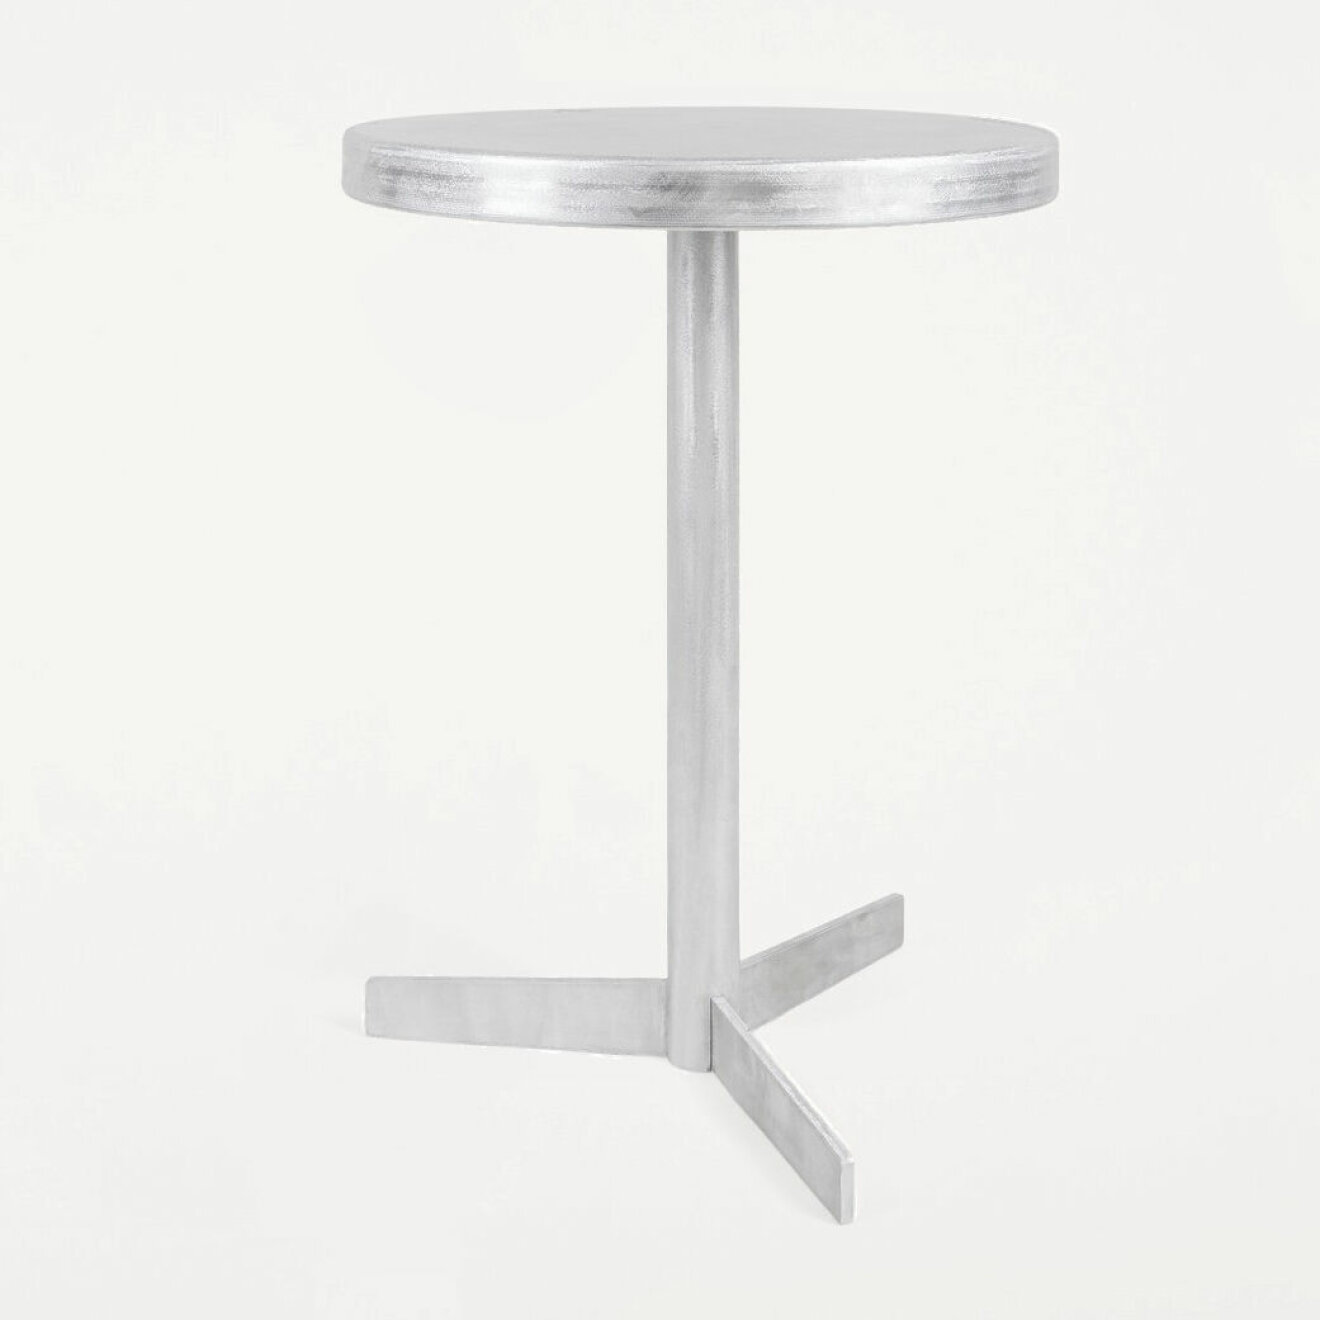 <i>Tasca table</i>, borstad aluminium, 10 448 kr, Frama.